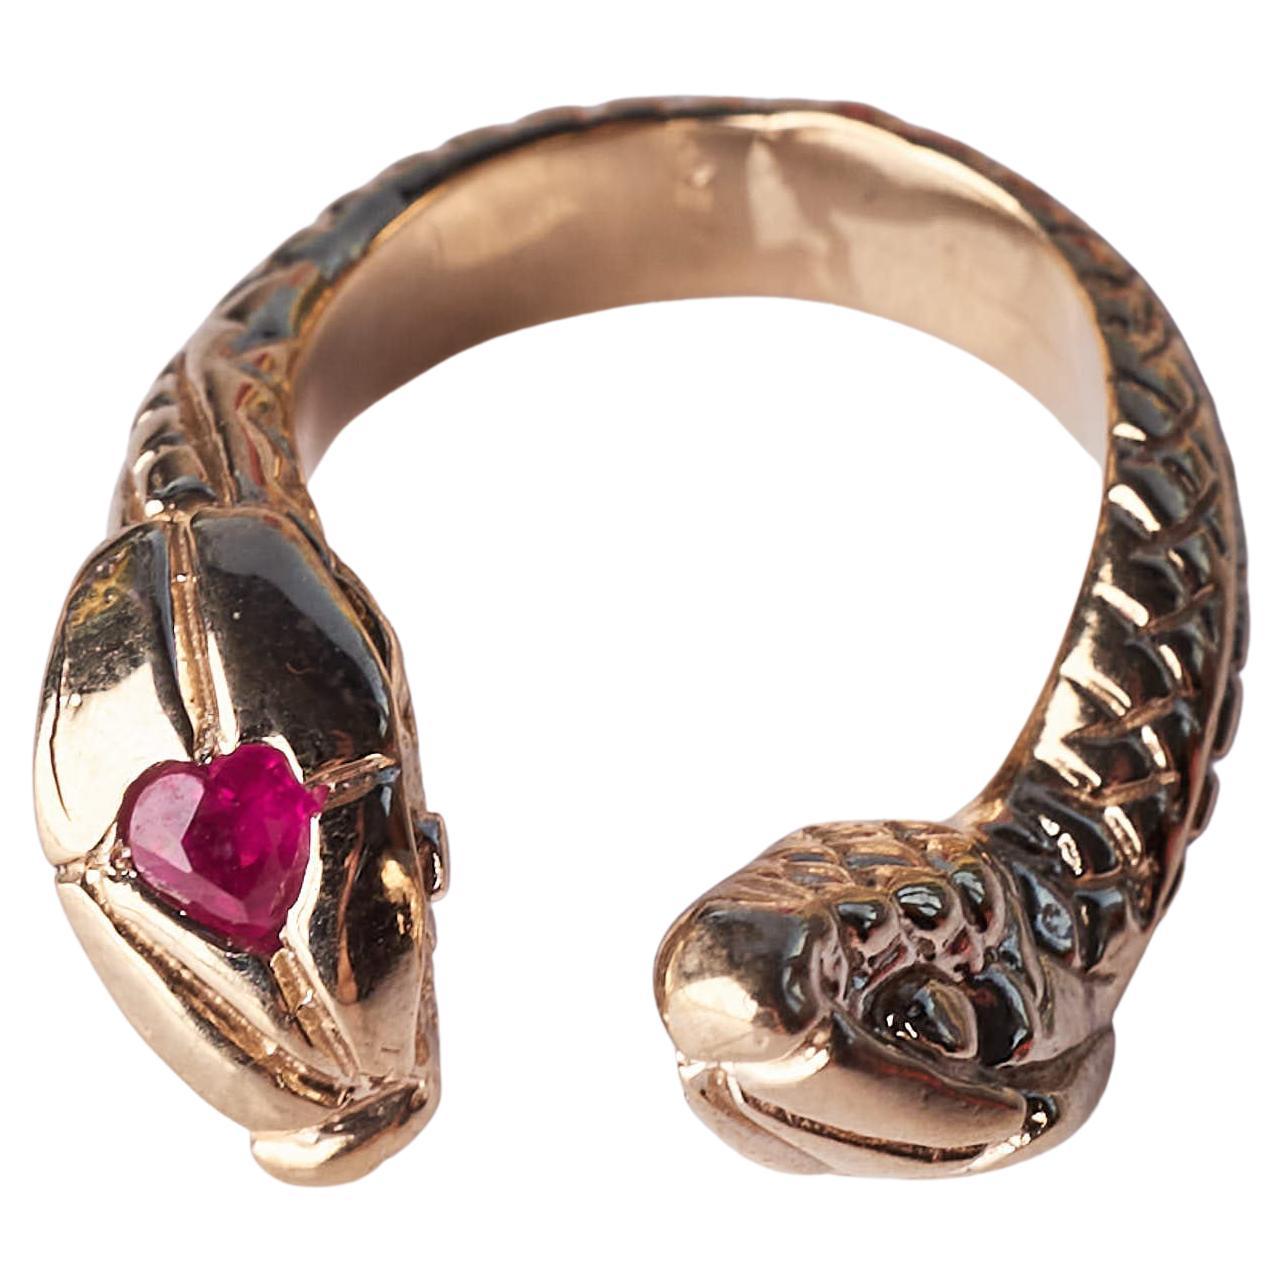 Herz Rubin Schlangenring Cocktail Ring Bronze J DAUPHIN
Perfekt für Valentinsschmuck

Dieser Ring hat eine große  Herz-Rubin auf dem Kopf der einen Schlange. Es ist ein großartiges Geschenk, da es verstellbar ist - und man kann es an jedem Finger